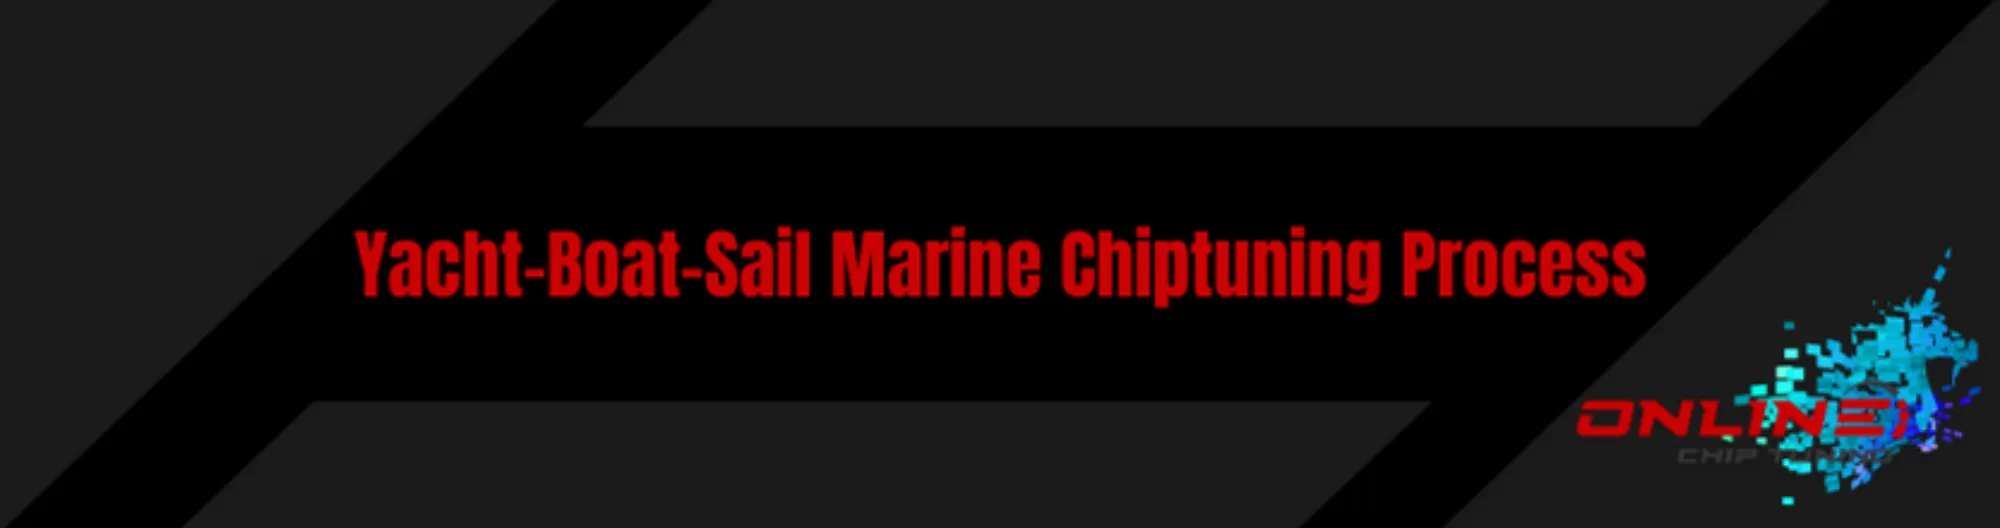 Yacht-Boat-Sail Marine Chiptuning Process